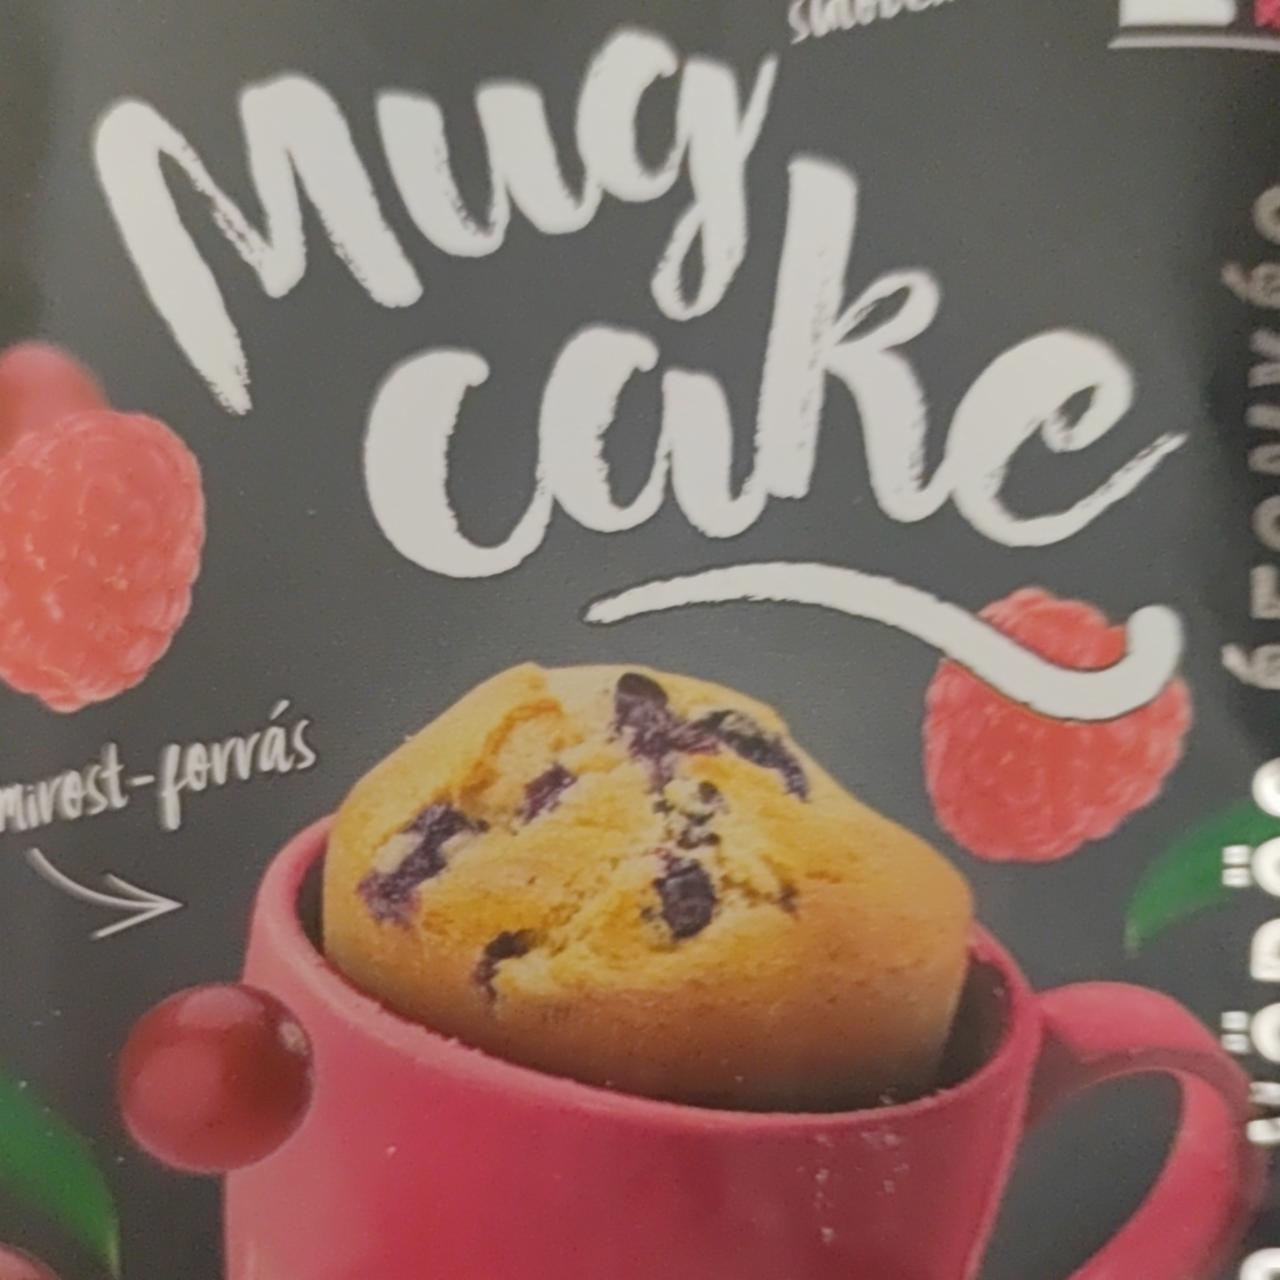 Képek - Mug cake vörös áfonyás-málnás Cornexi